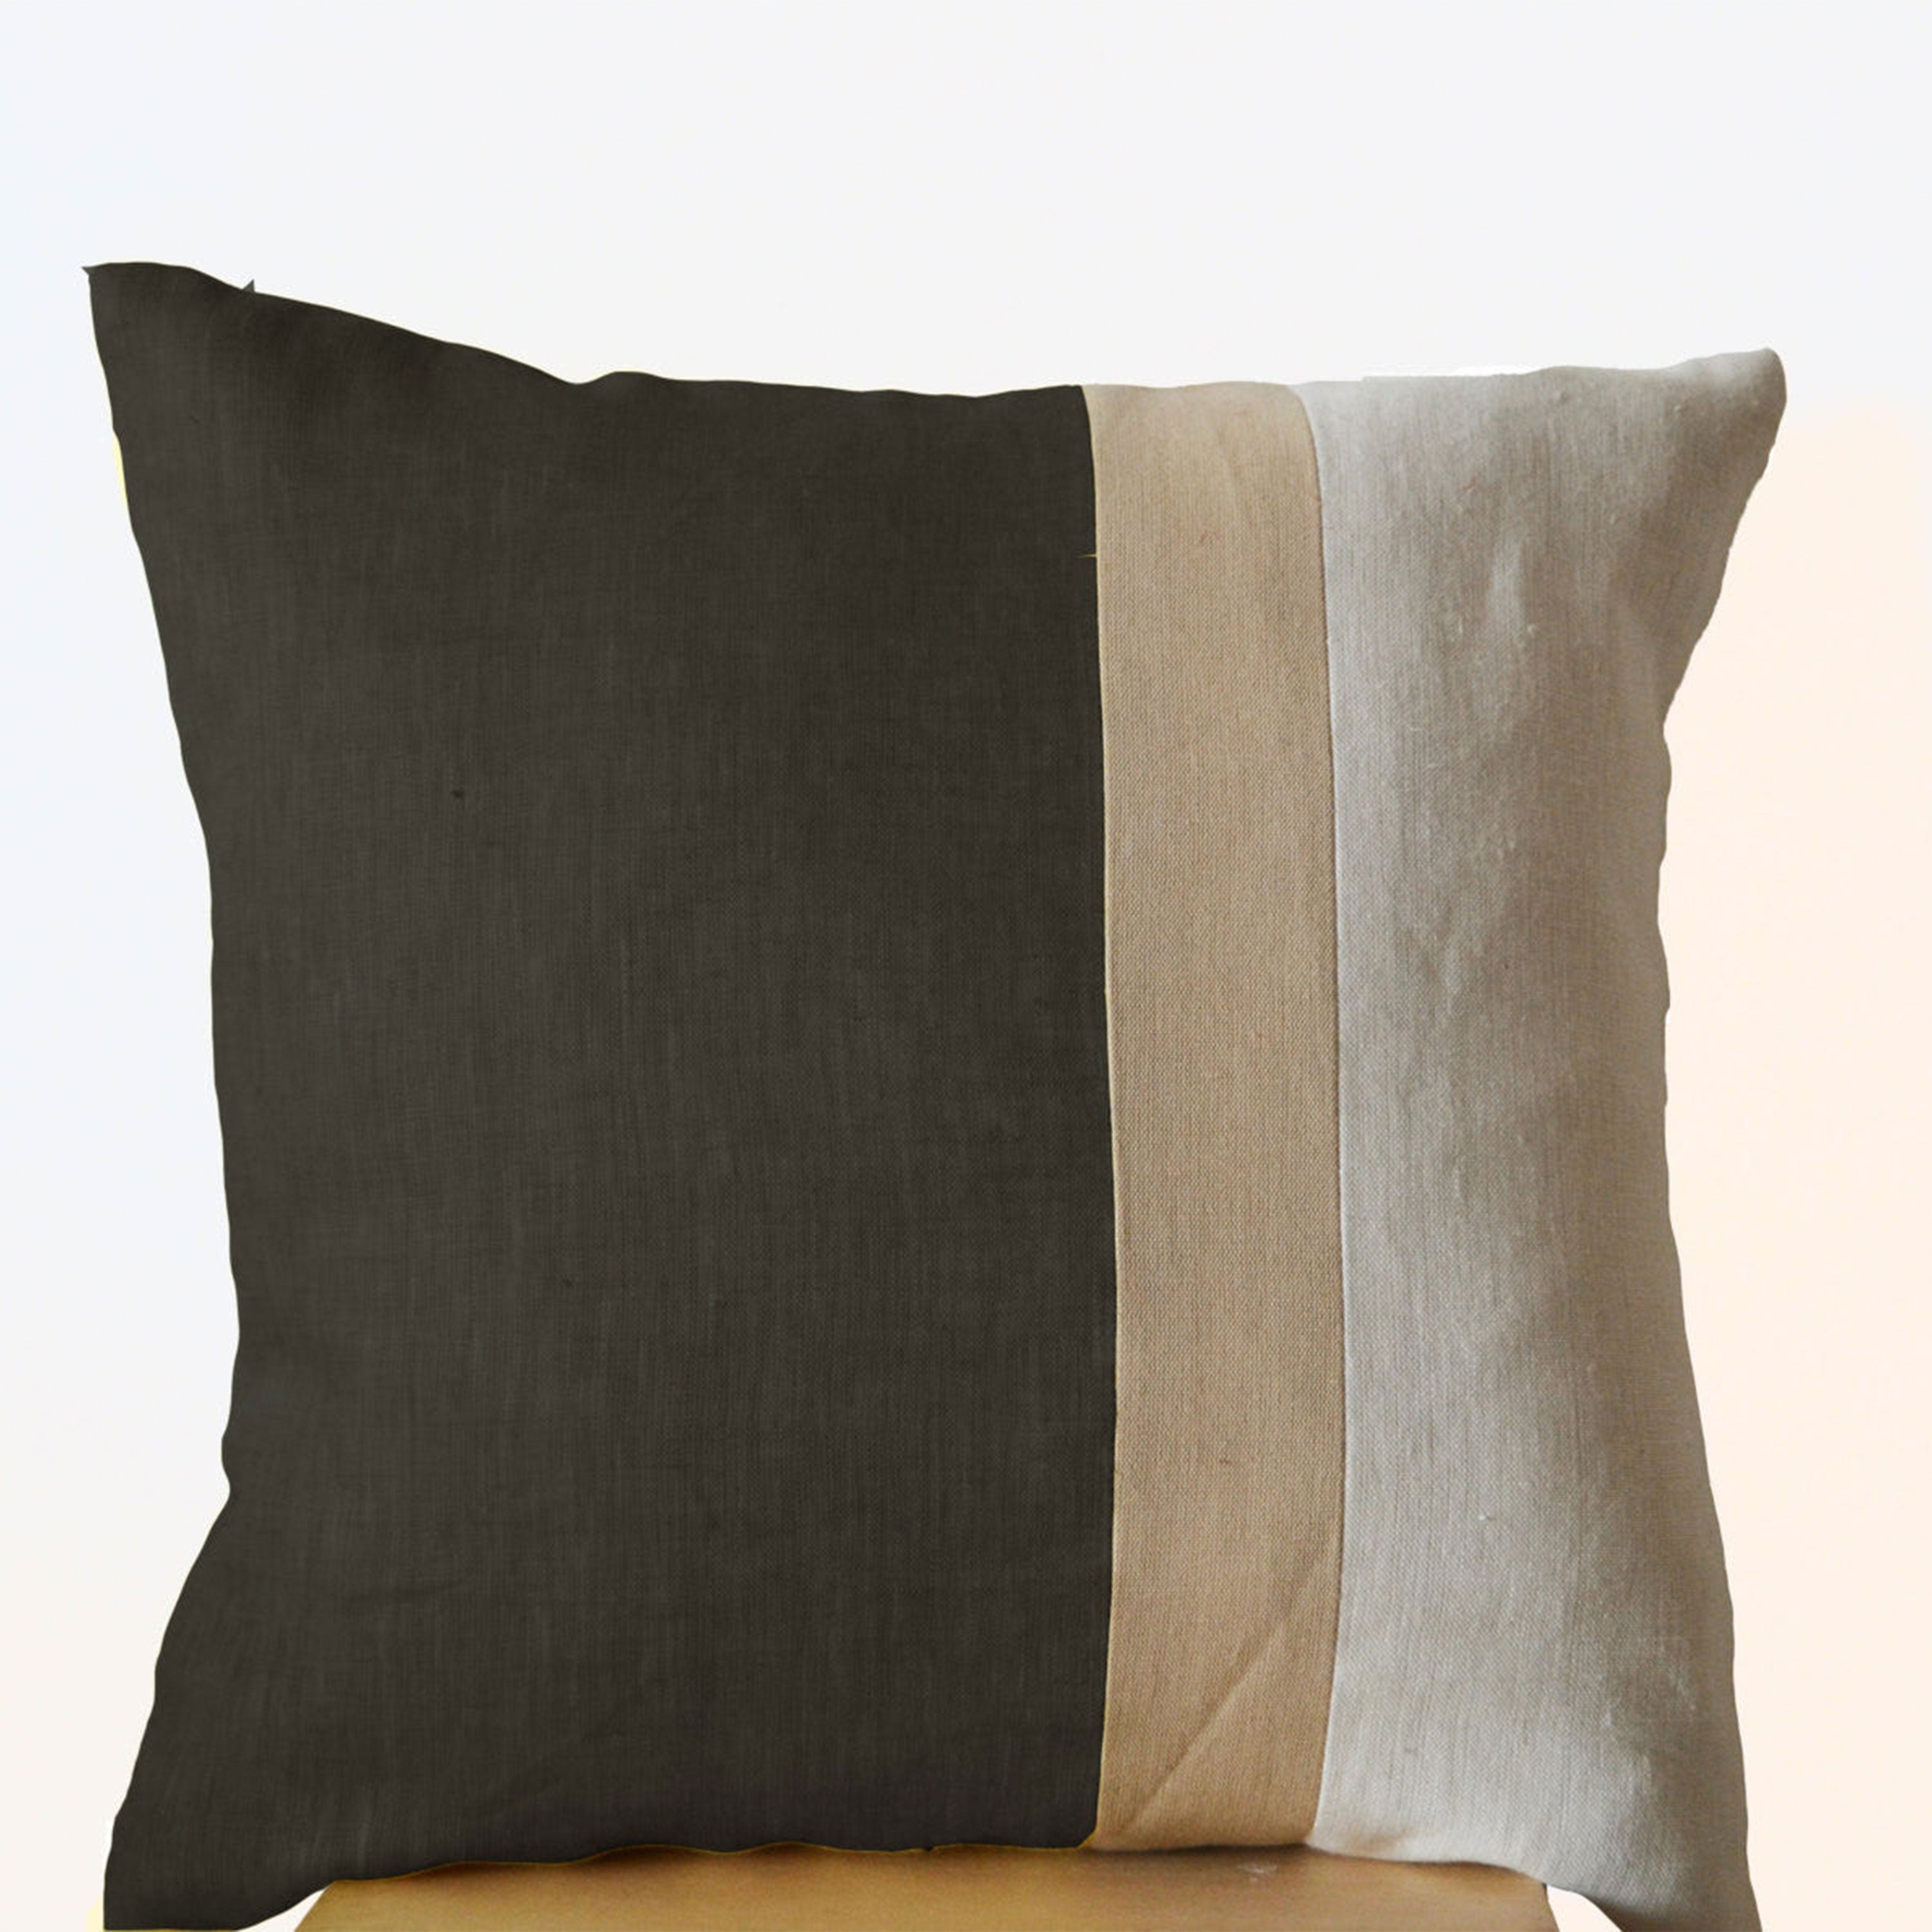 Grey Pillow -Throw Pillow color block -Couch Pillow -Decorative cushion cover- Spring Throw pillow -gift -Bedding -16X16- Gray Linen Pillows